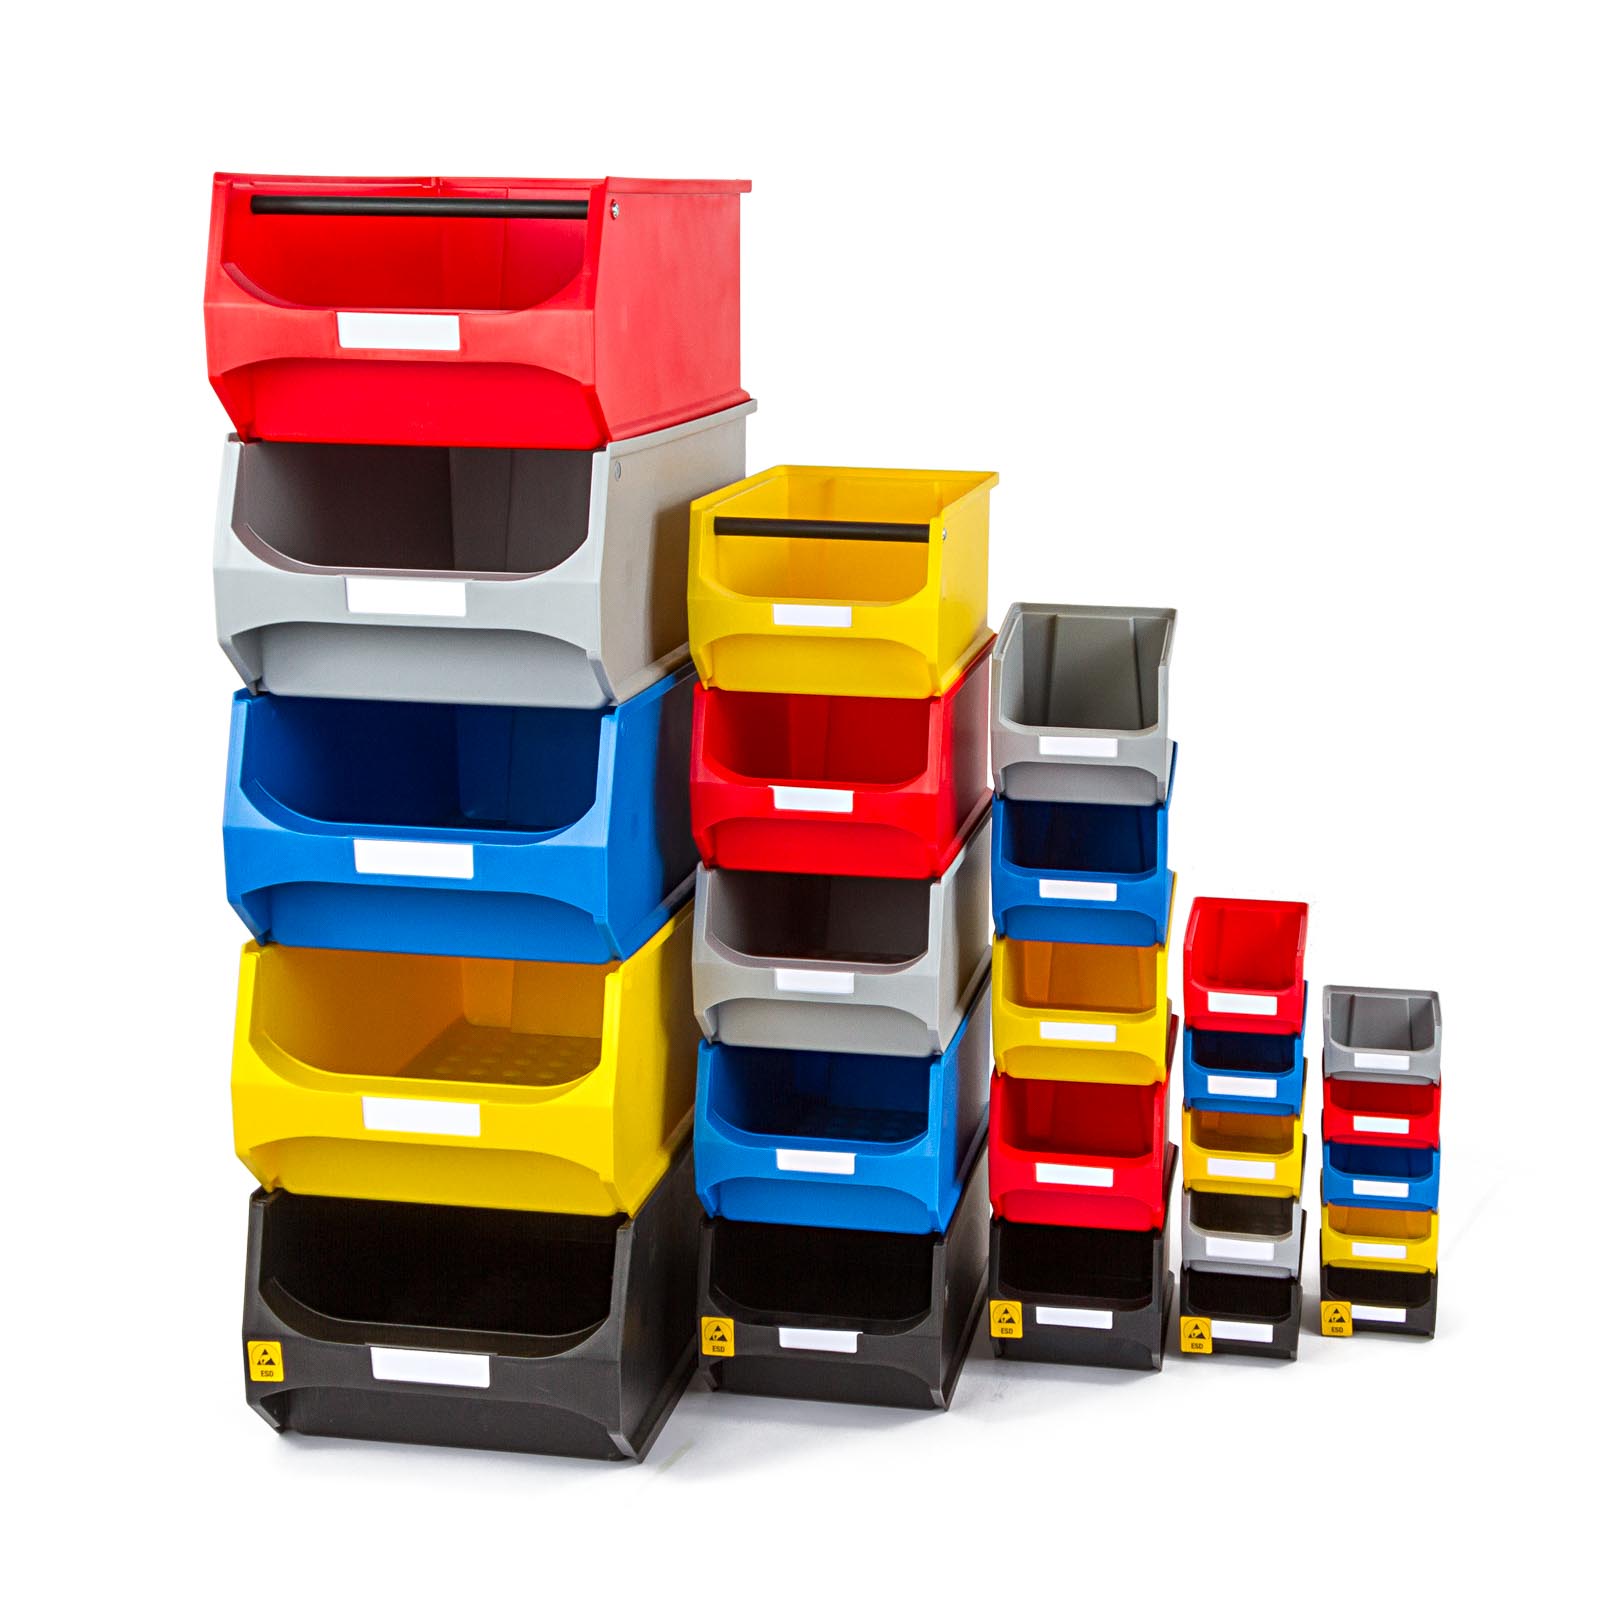 Beschriftbare Sichtlagerboxen für die Lagerung von Schrauben und anderen Kleinteilen.